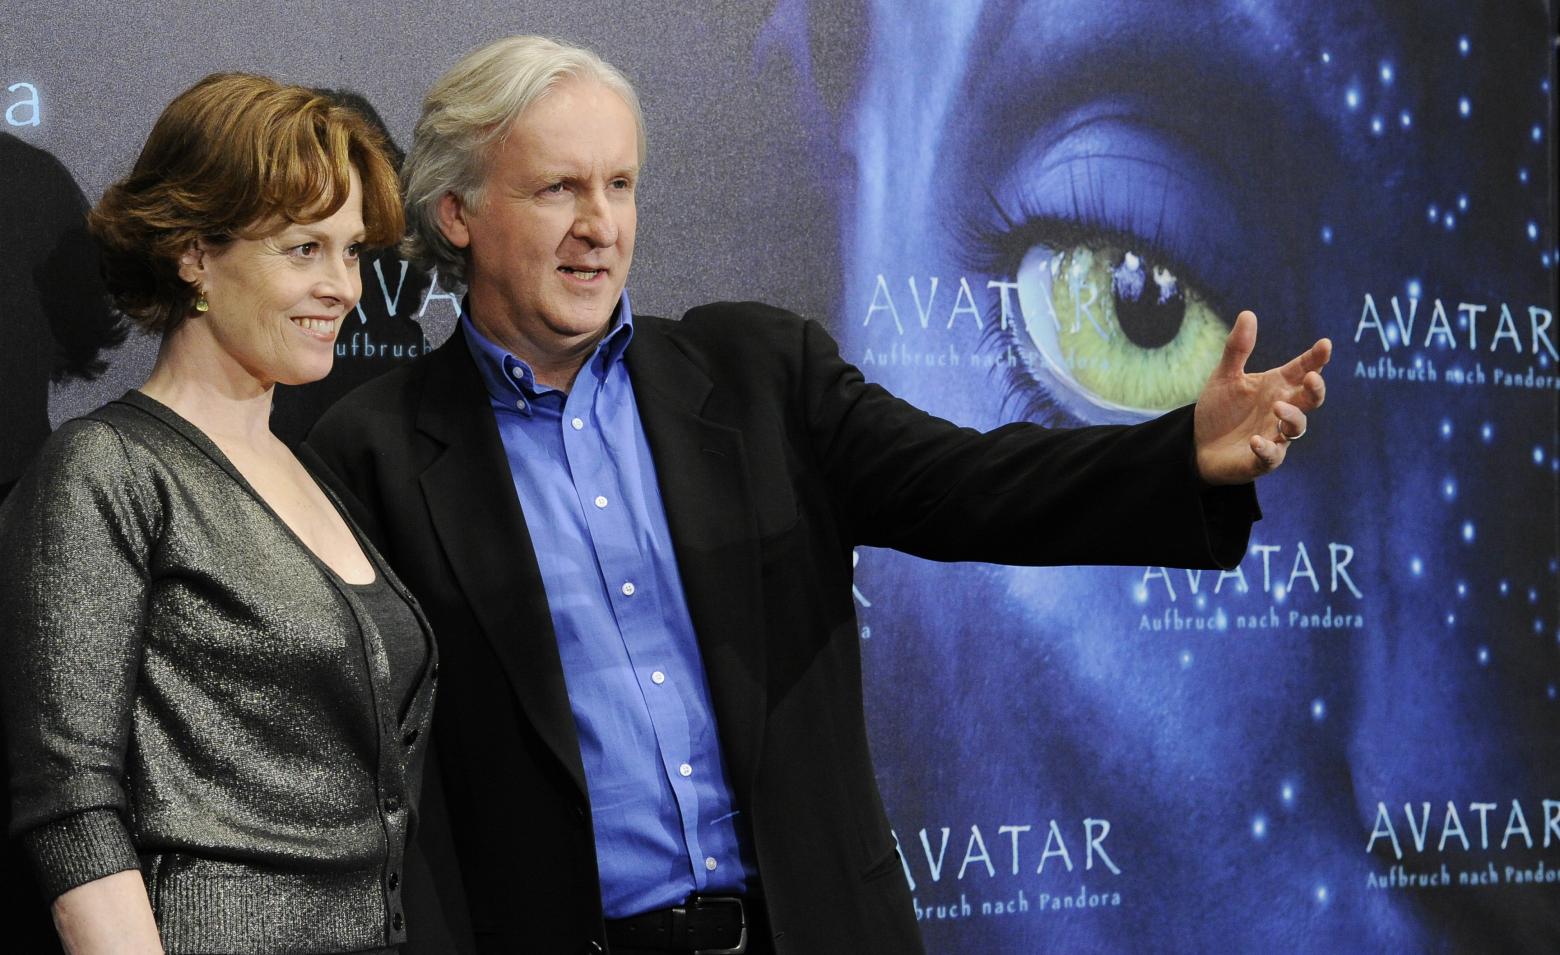 Die US-Schauspielerin Sigourney Weaver (l) und US-Regisseur James Cameron bei einem Photocall zur Vorstellung des Films "Avatar - Aufbruch nach Pandora". Vor mehr als einem Jahrzehnt schrieb Hollywoods Erfolgsregisseur James Cameron Kinogeschichte. Nun, nach sehr langer Pause, folgt 2022 Teil zwei